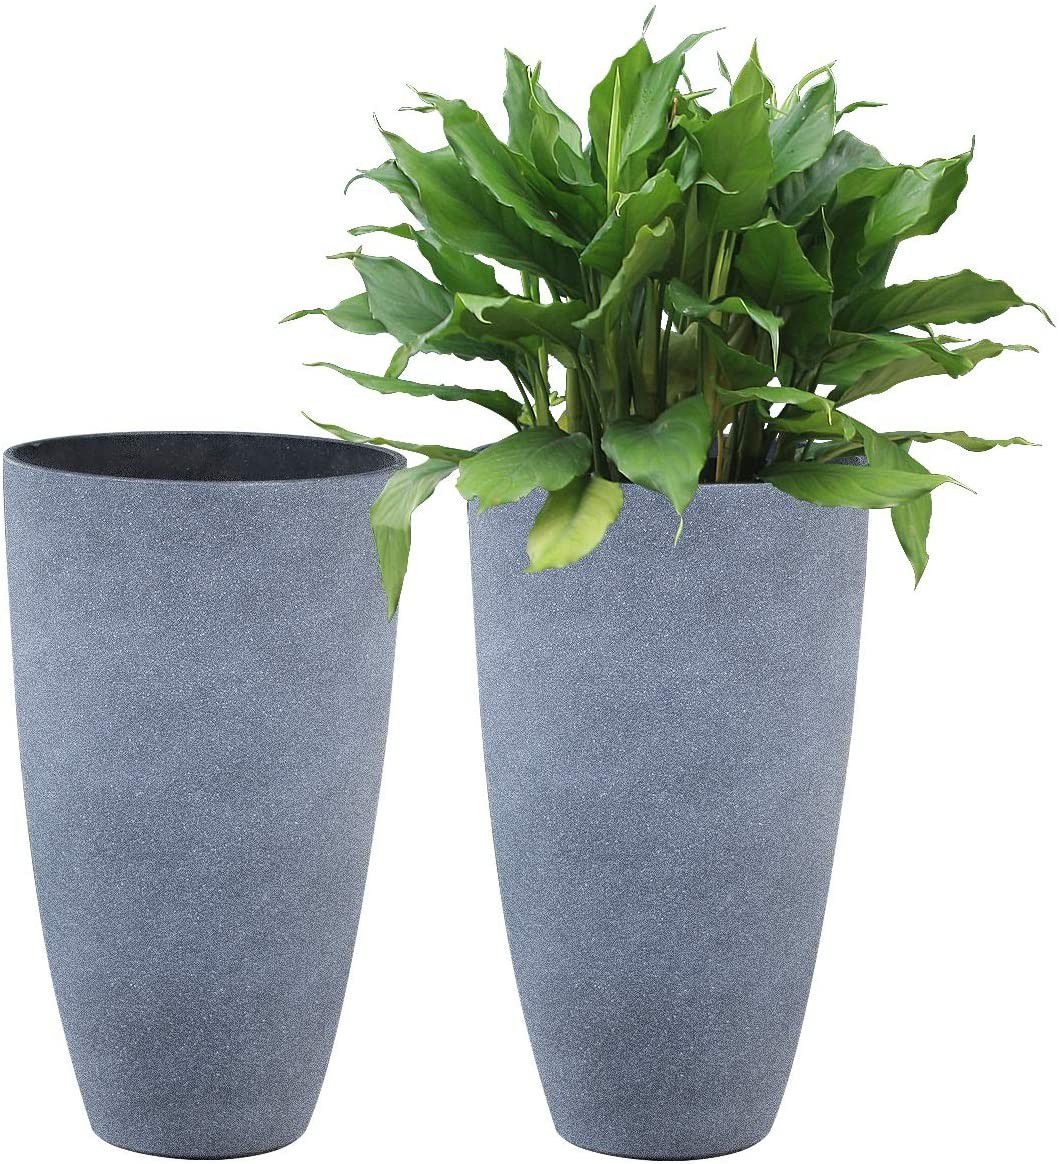 Set of 2 - Tall Planters Flower Pots, Indoor/Outdoor Patio Deck Garden Decor